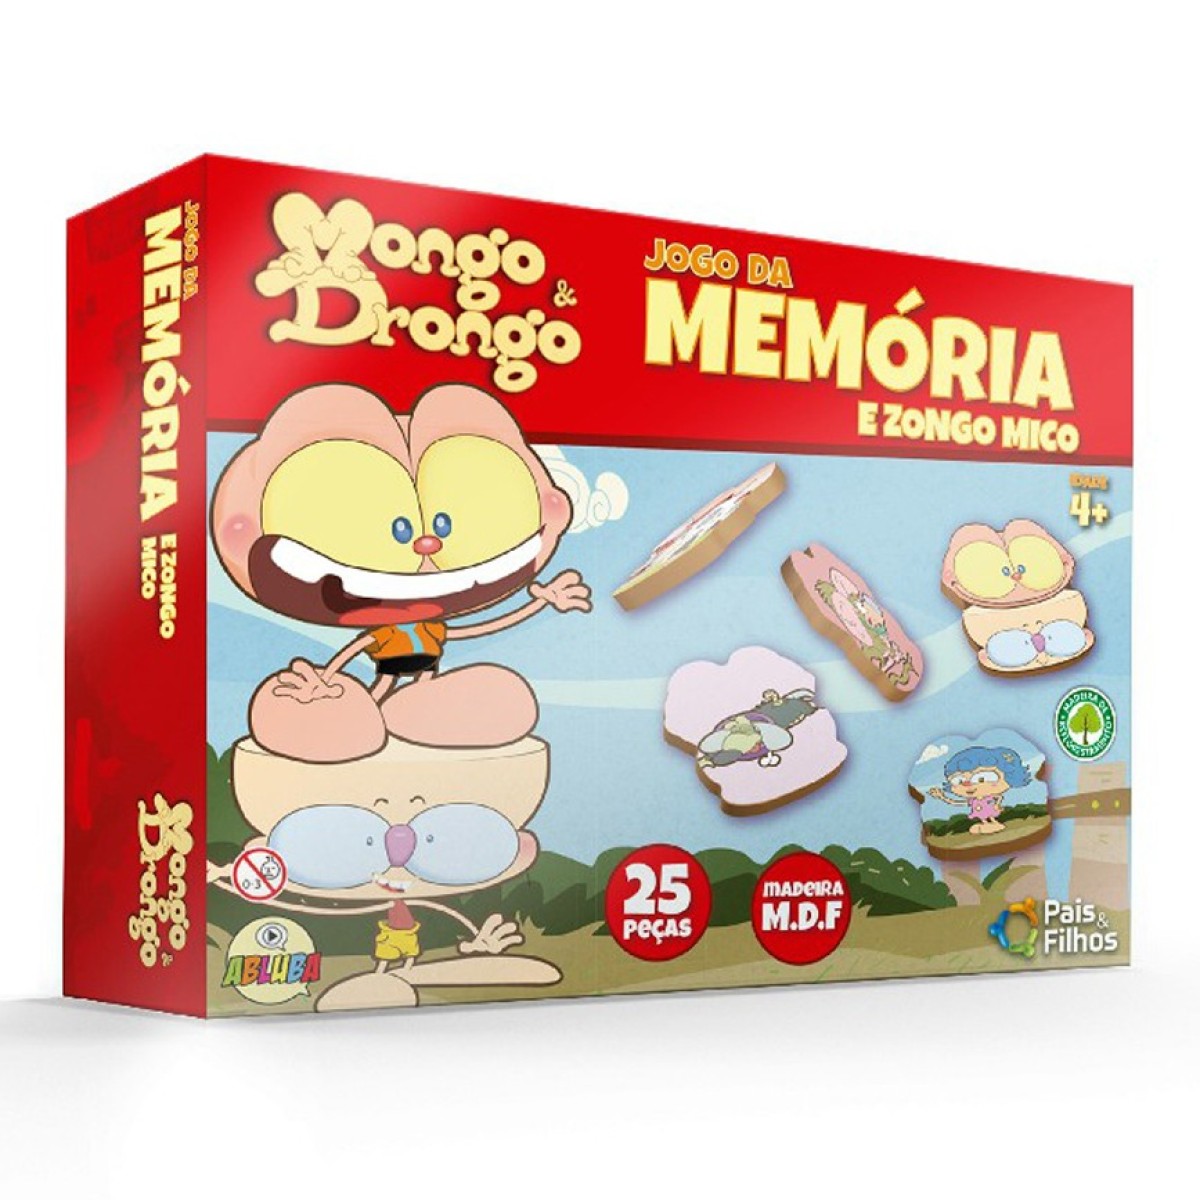 Jogo da memória infantil mongo & drongo-10791-72616